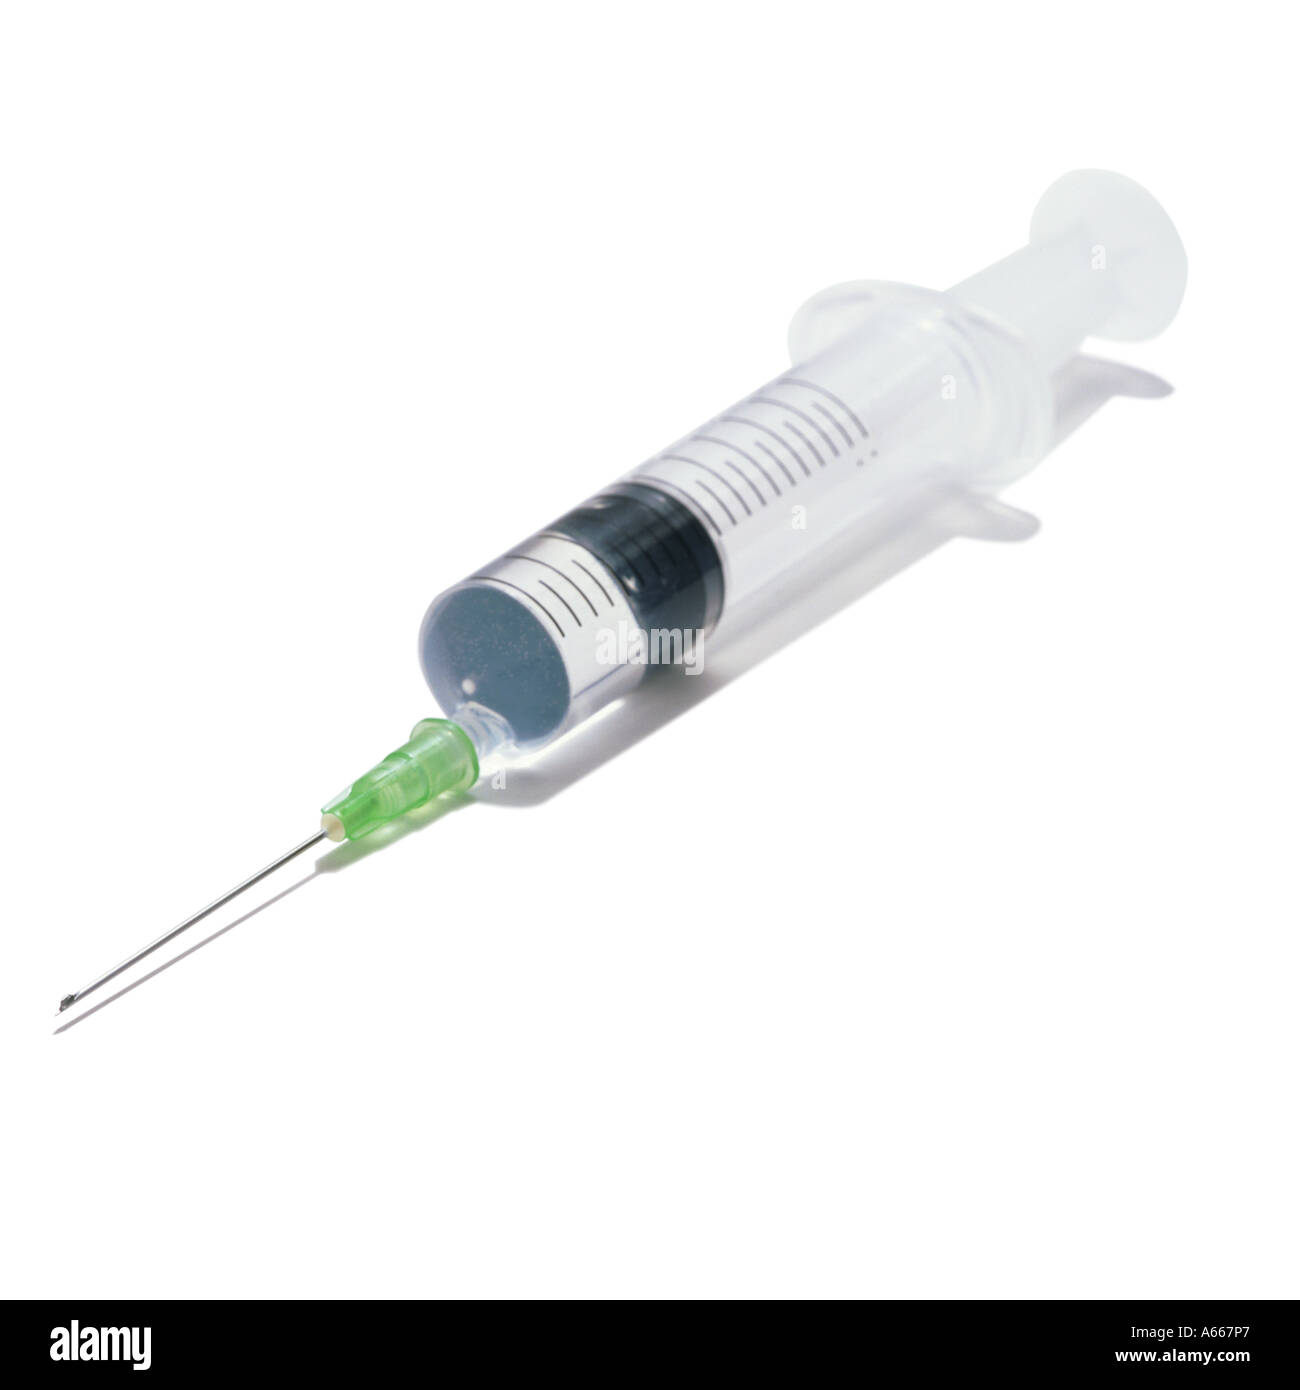 A syringe Stock Photo